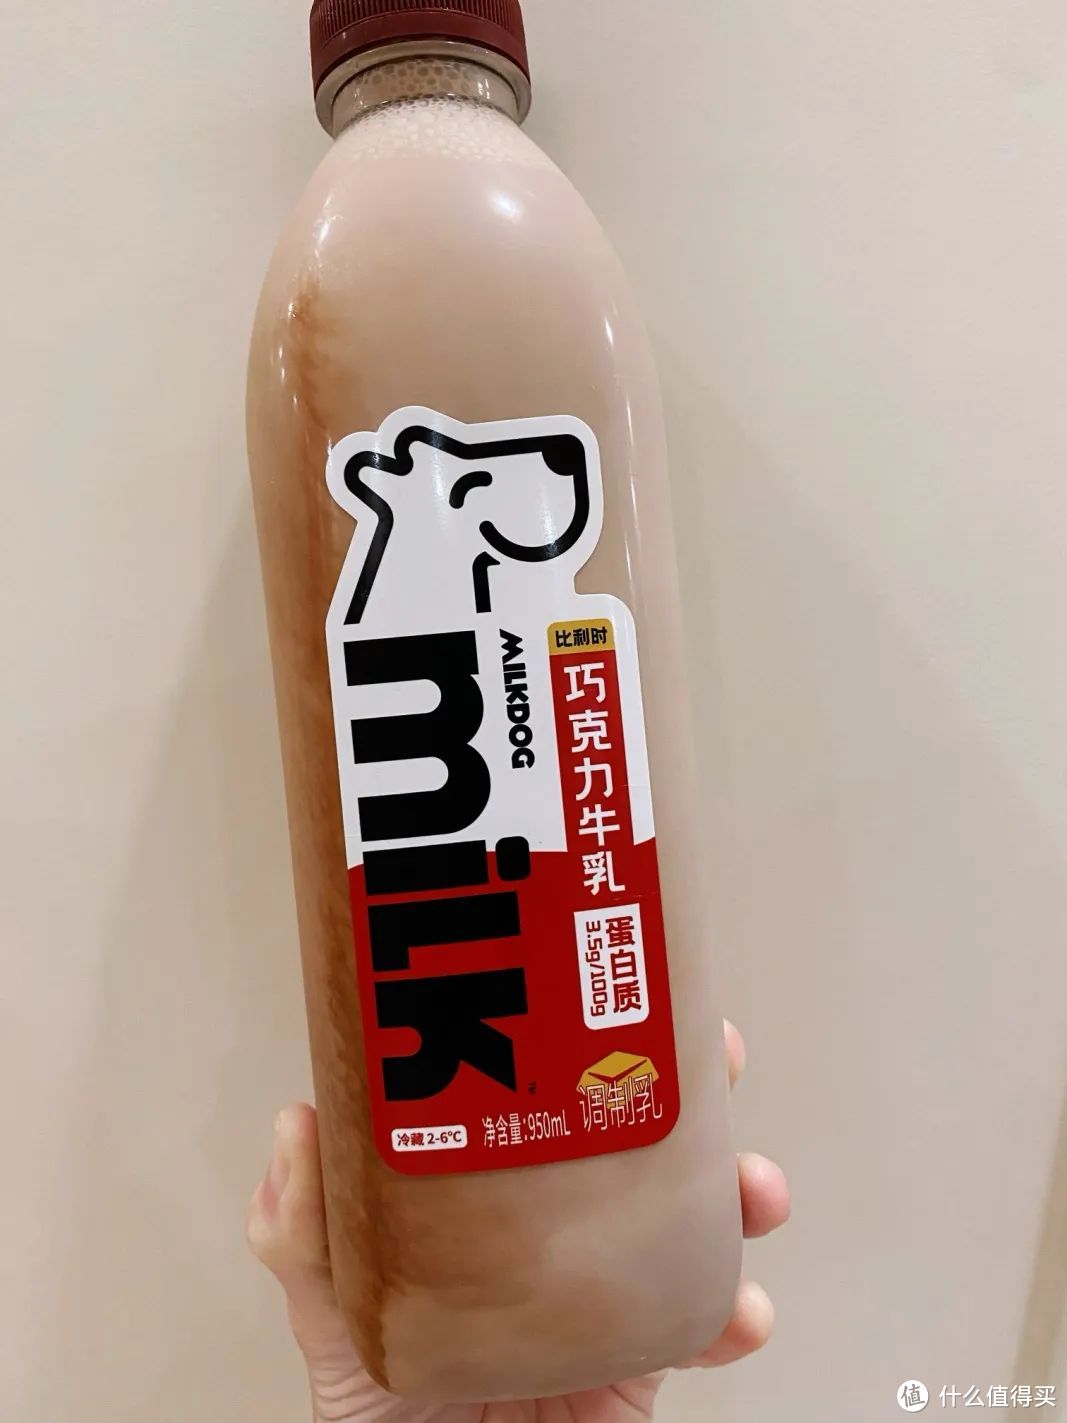 「新」试用 | 新品牌体验之「Milkdog每一克」巴氏杀菌巧克力鲜牛乳